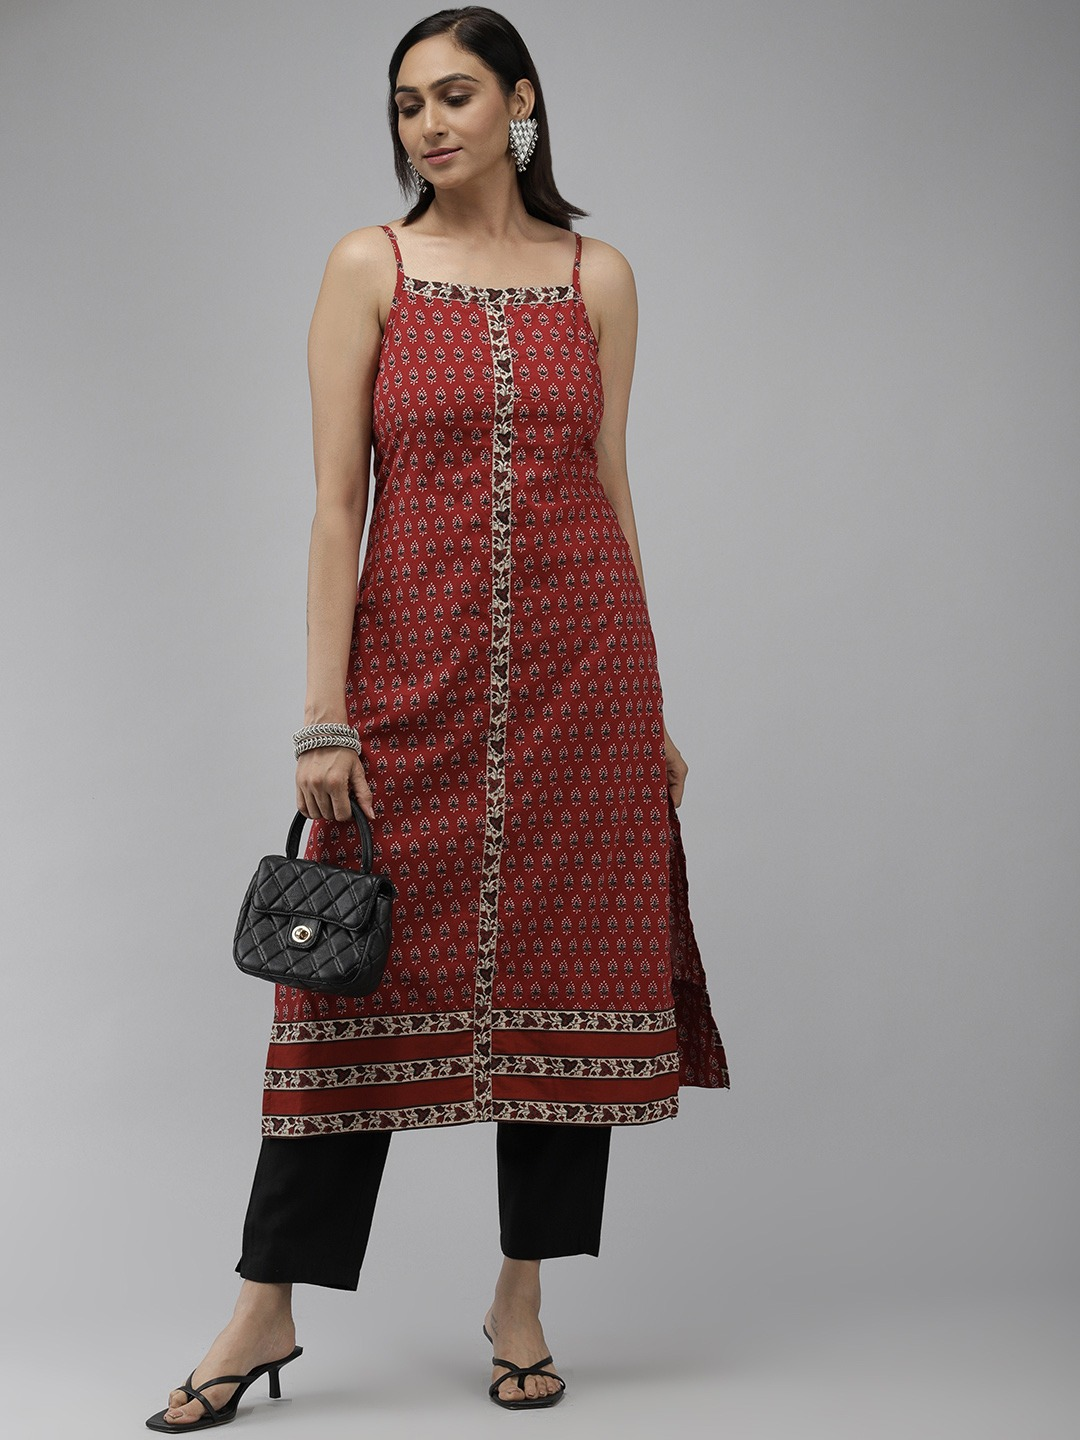 Share 125+ square neck sleeveless kurti best